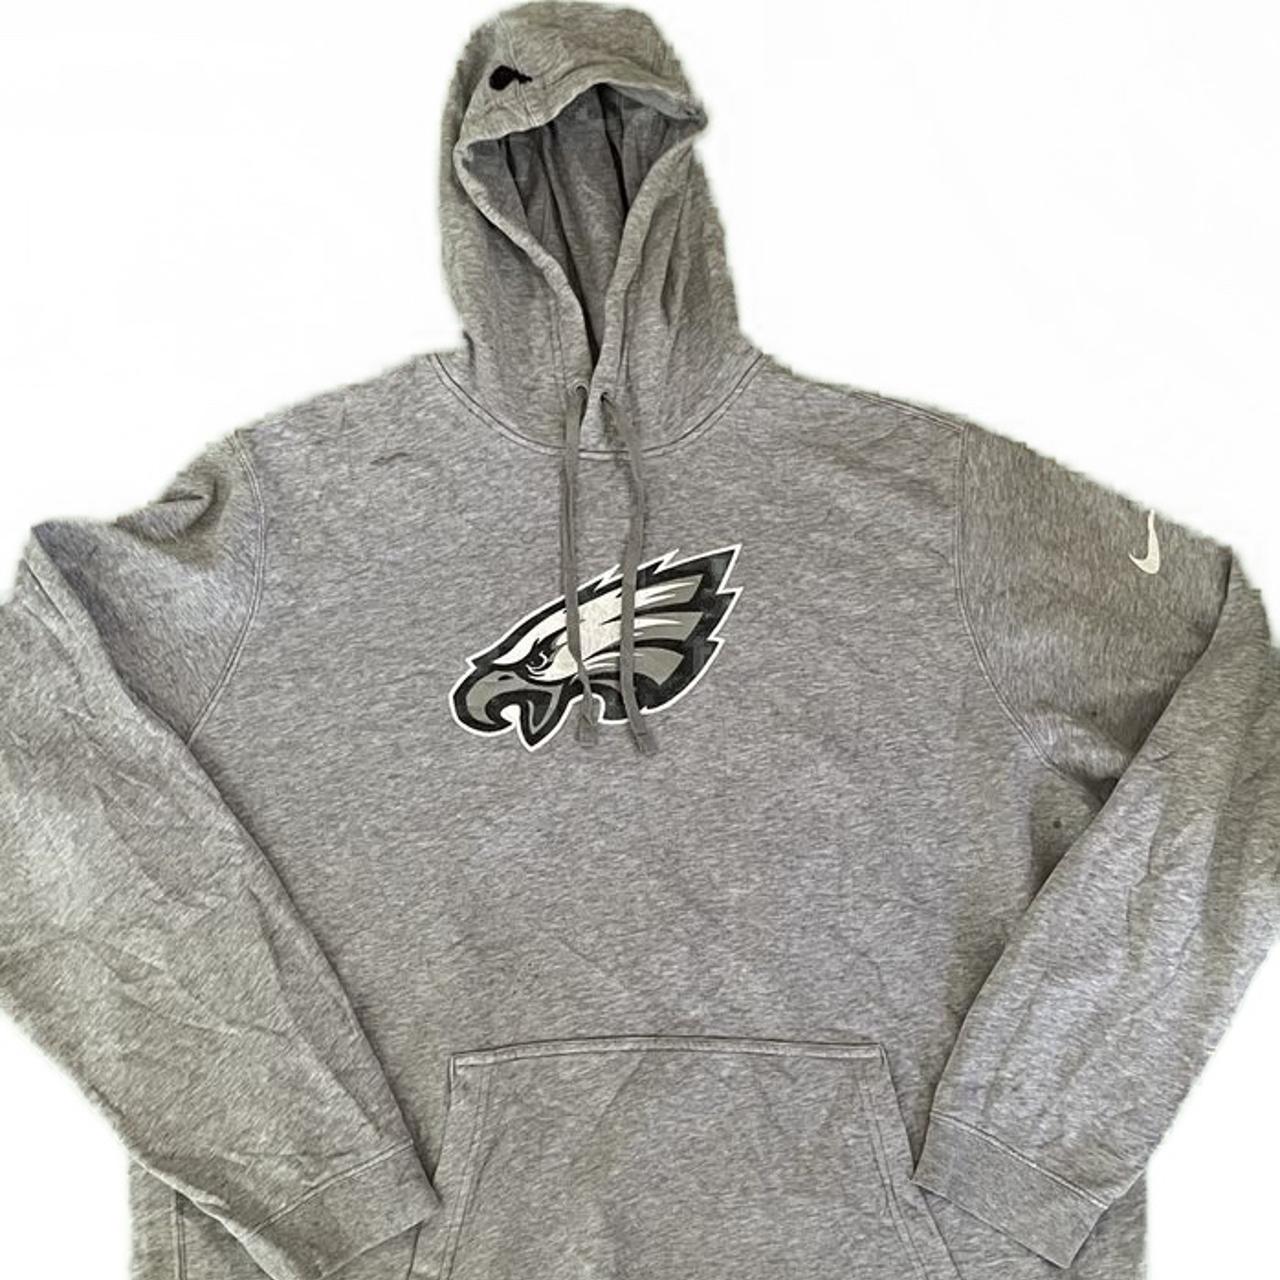 Nike vintage Philadelphia Eagles hoodie Cracked - Depop